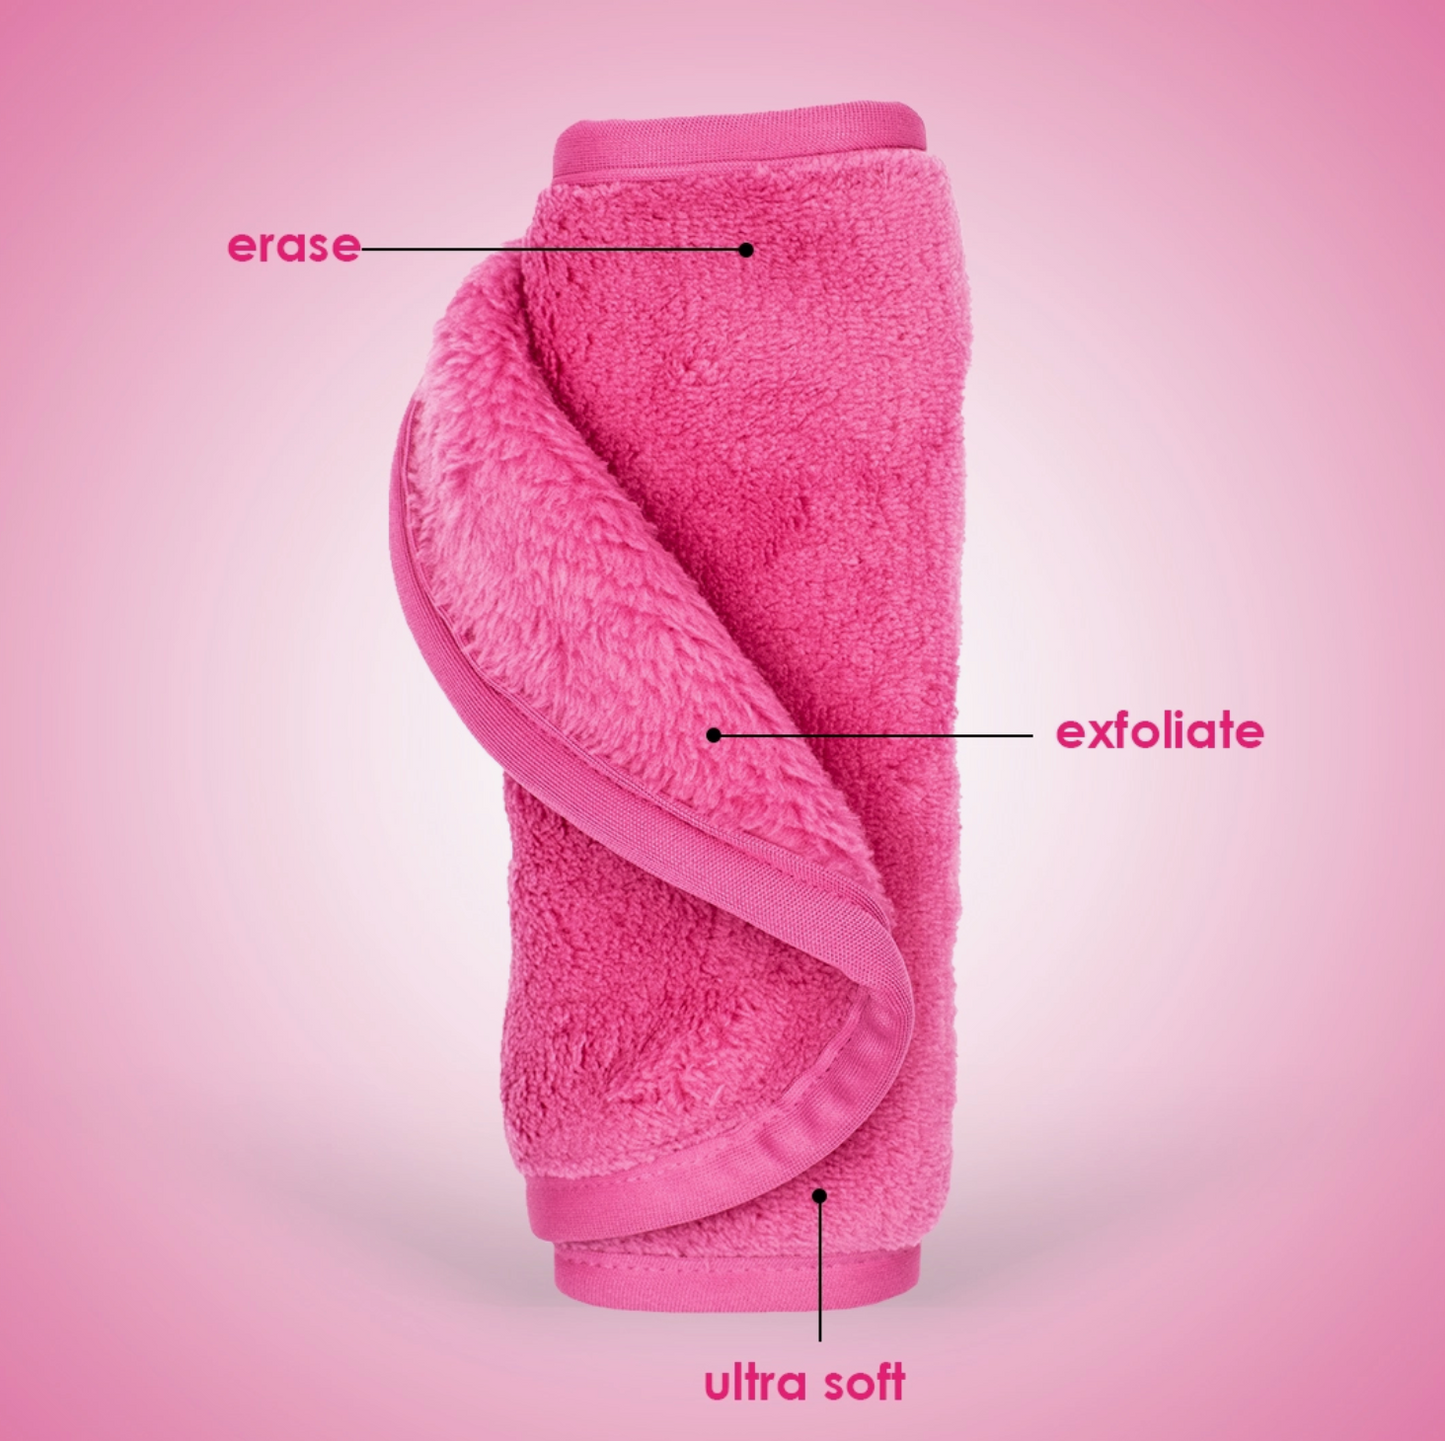 Original Pink | Luxe MakeUp Eraser